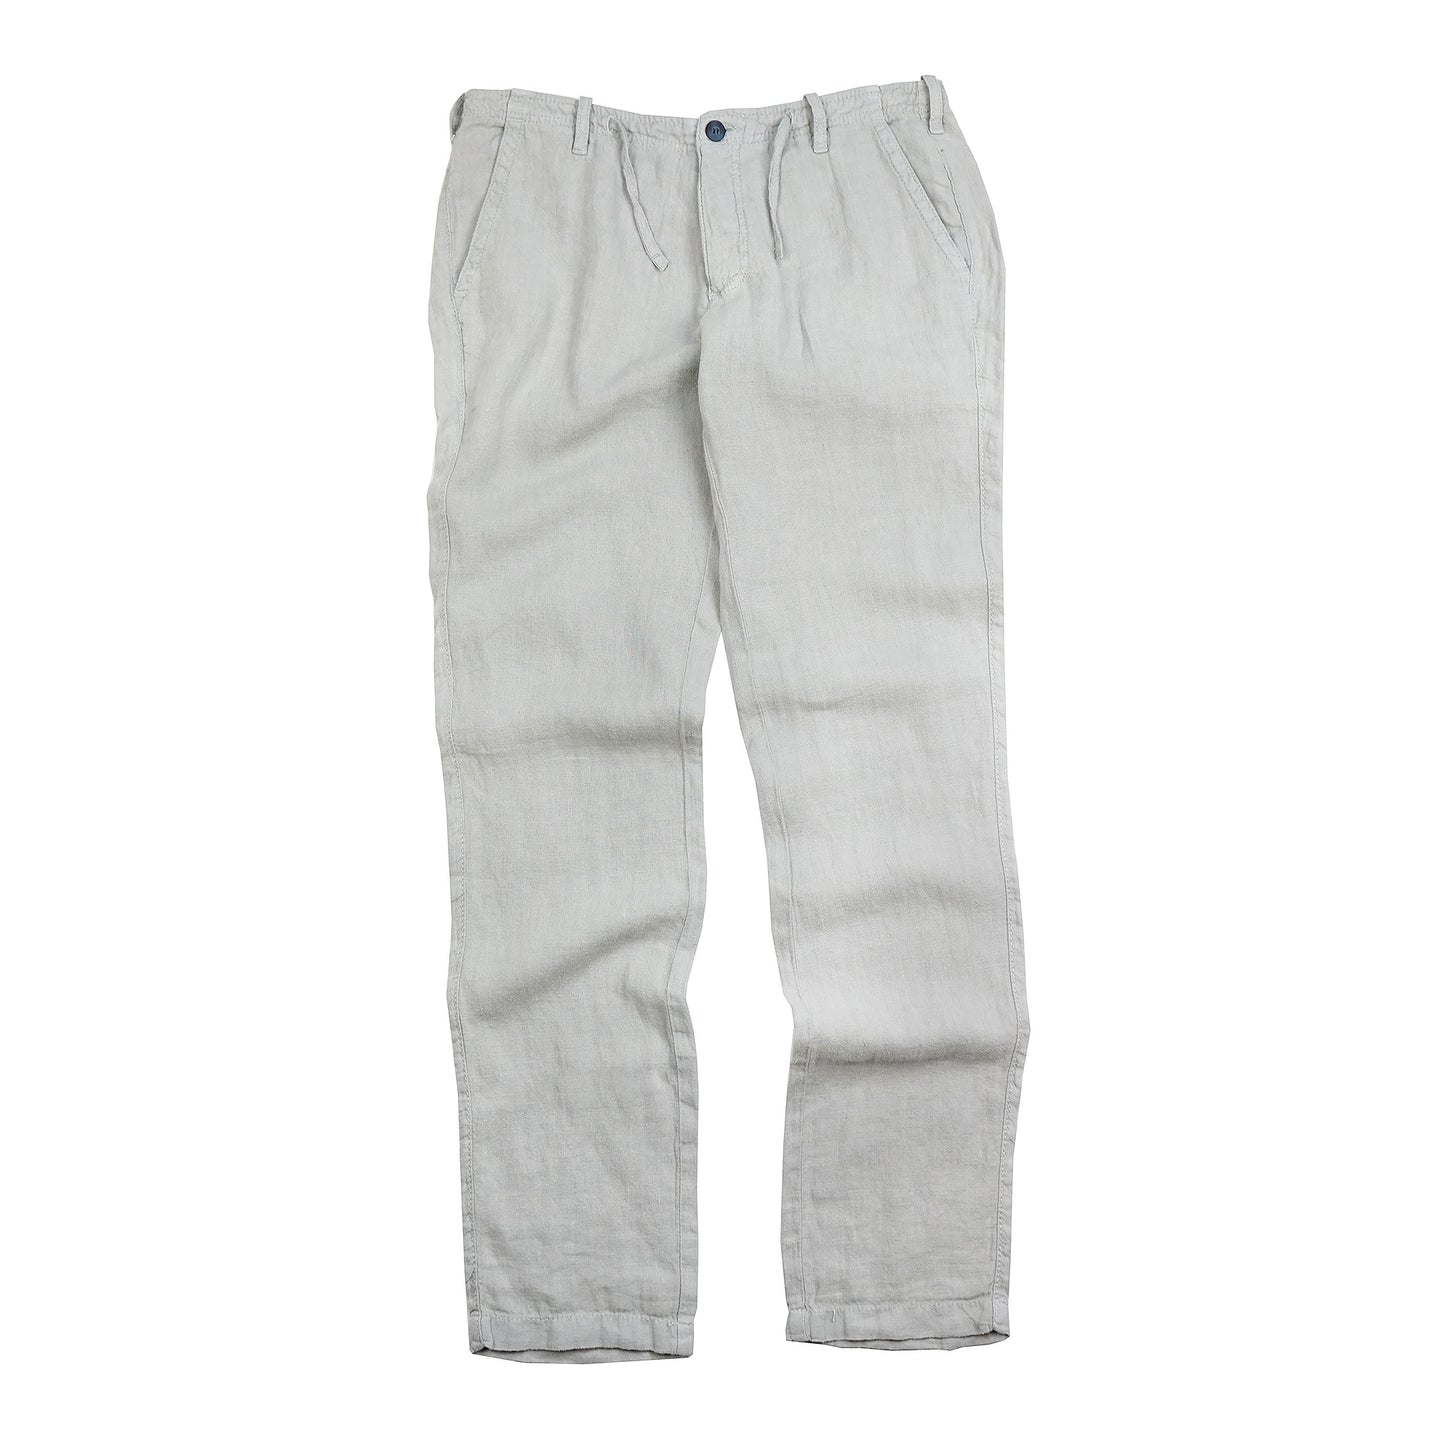 Key West Light Grey Linen Pants